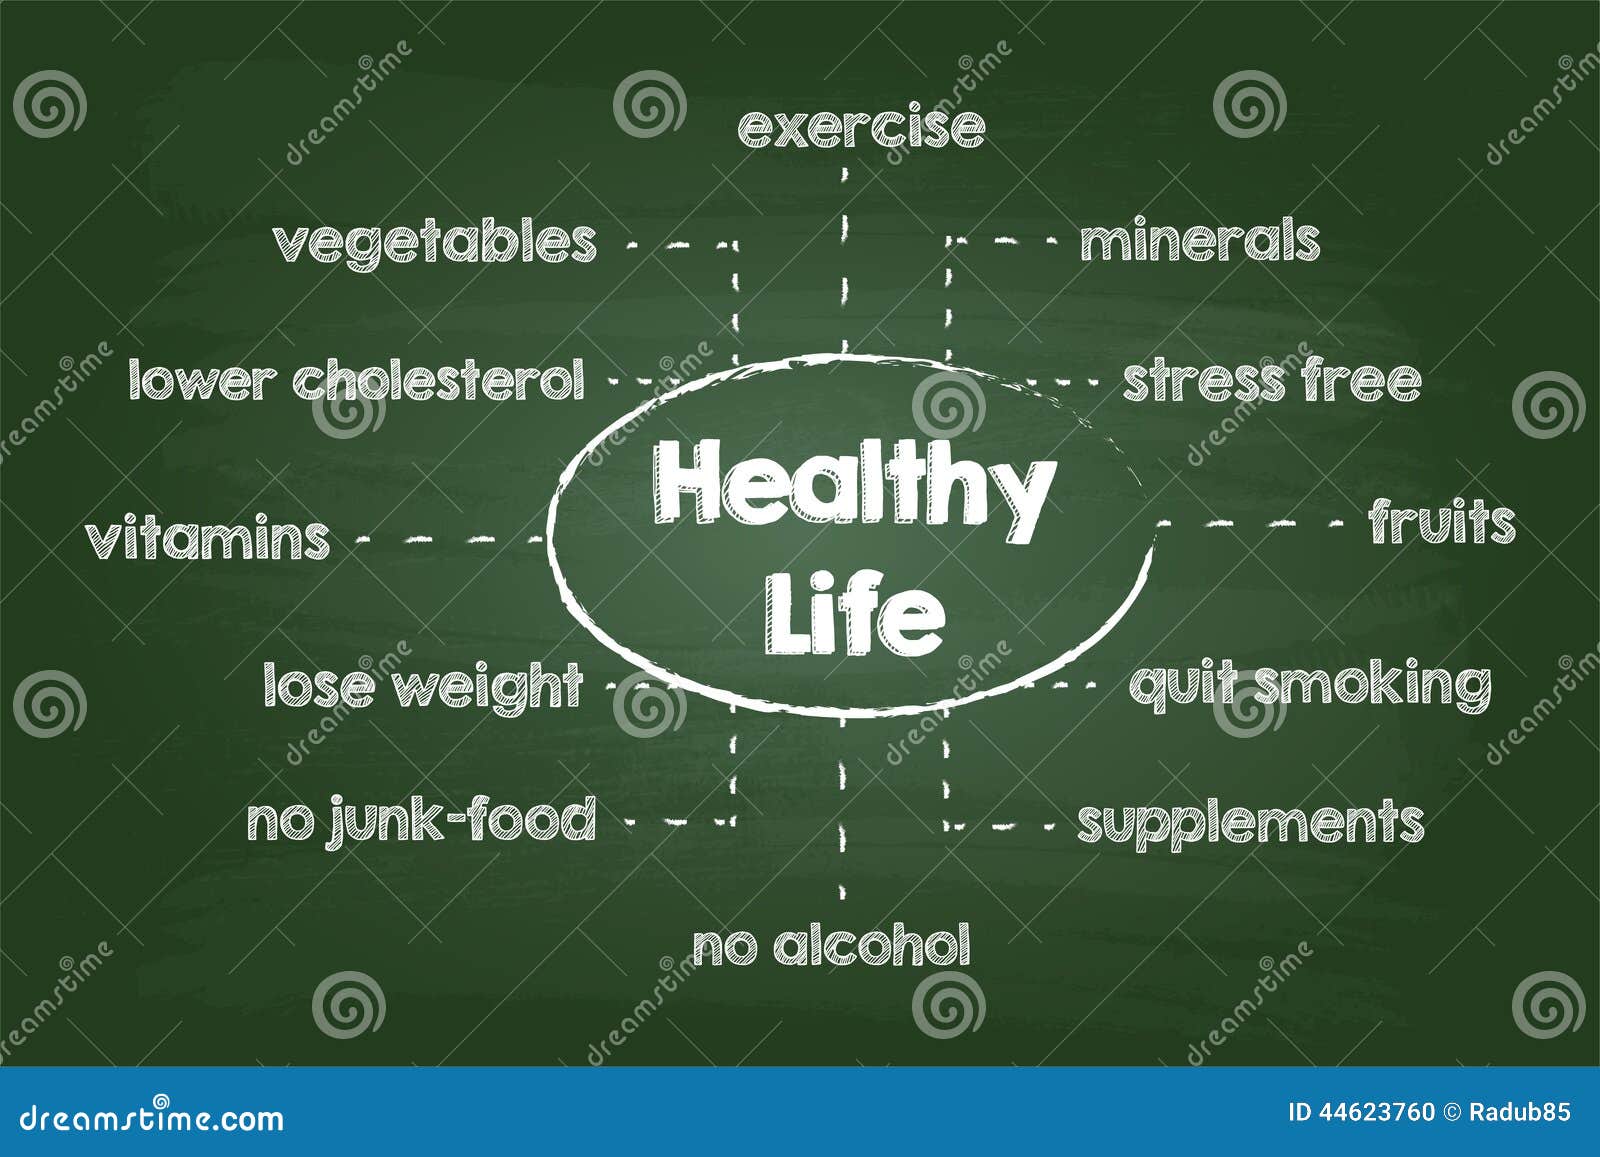 Lifestyle Chart